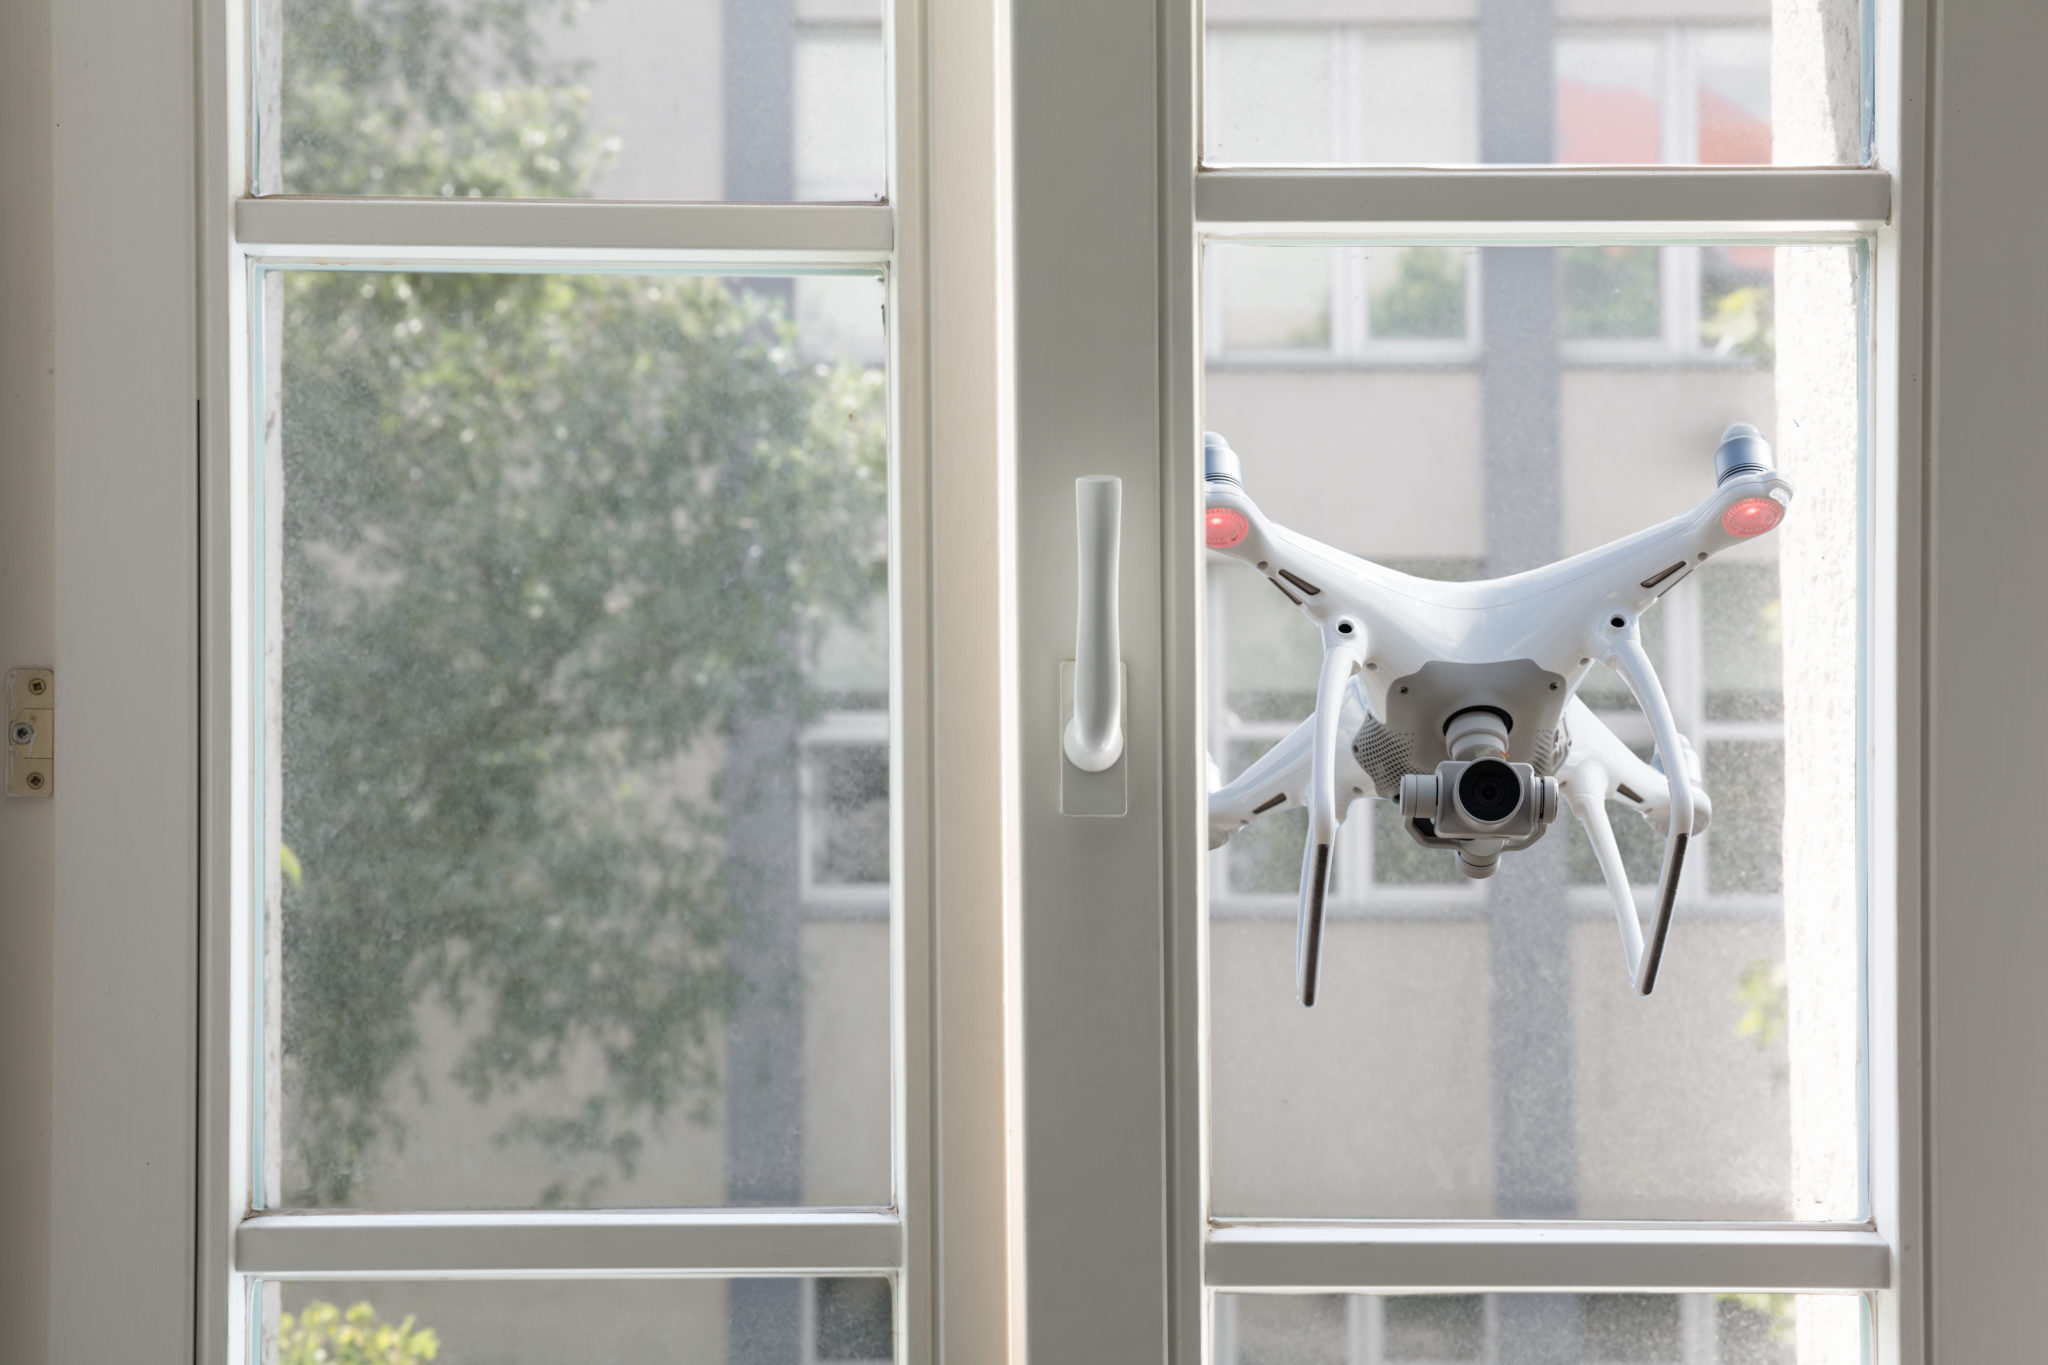 Eine fliegende Drohne spioniert durchs Fenster.